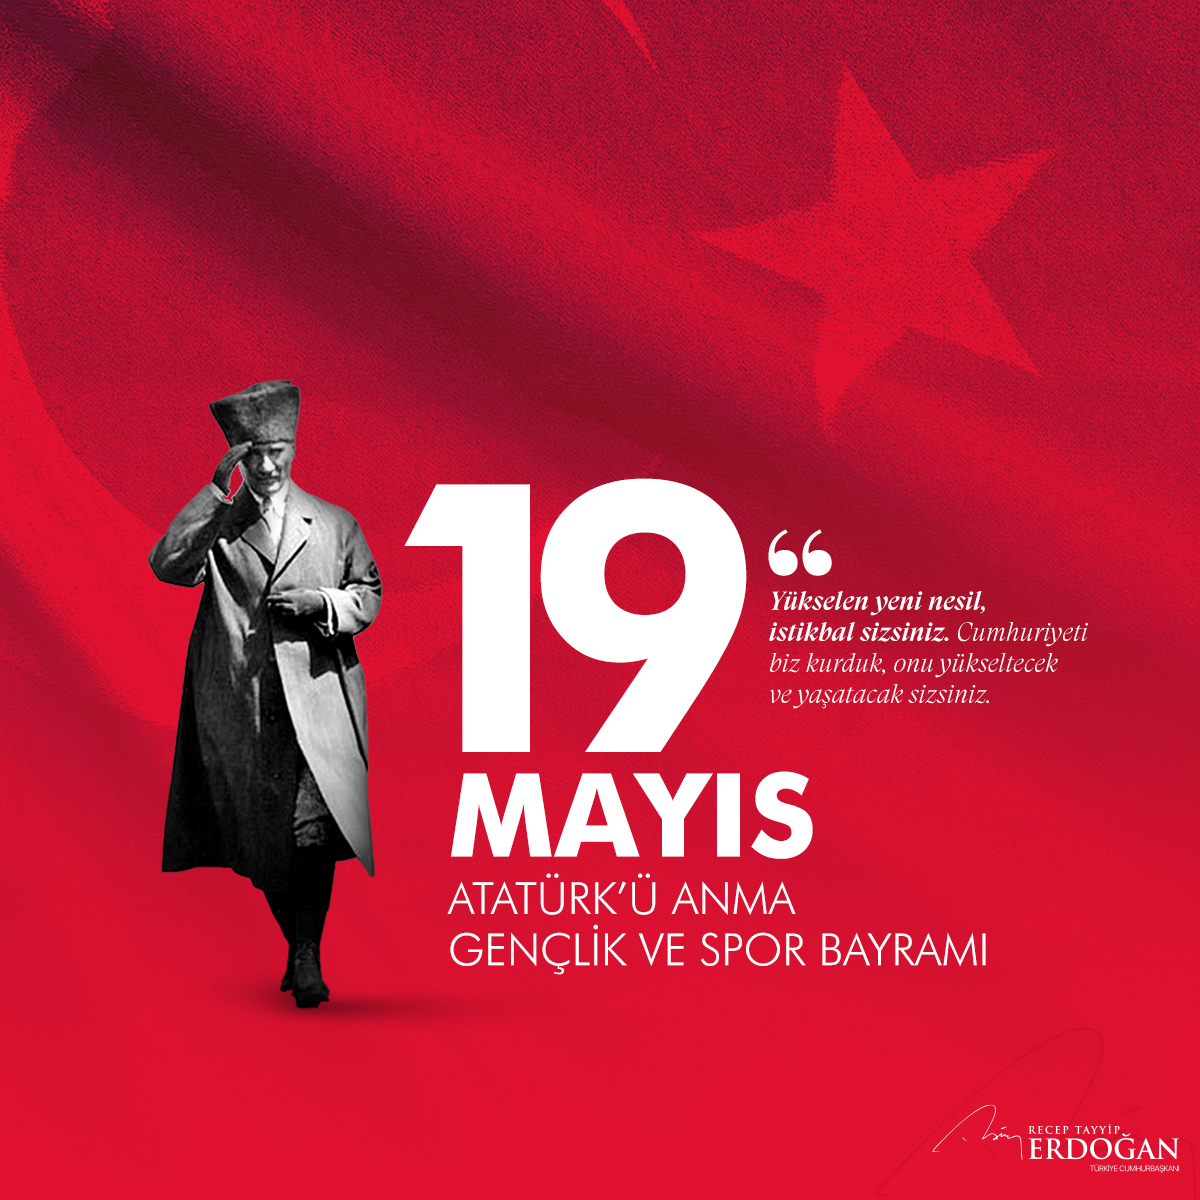 19 Mayıs Atatürk’ü Anma, Gençlik ve Spor Bayramı’nı tebrik ediyor, başta Gazi Mustafa Kemal olmak üzere Kurtuluş Savaşımızın bütün kahramanlarını saygıyla anıyorum. 

tccb.gov.tr/basin-aciklama…